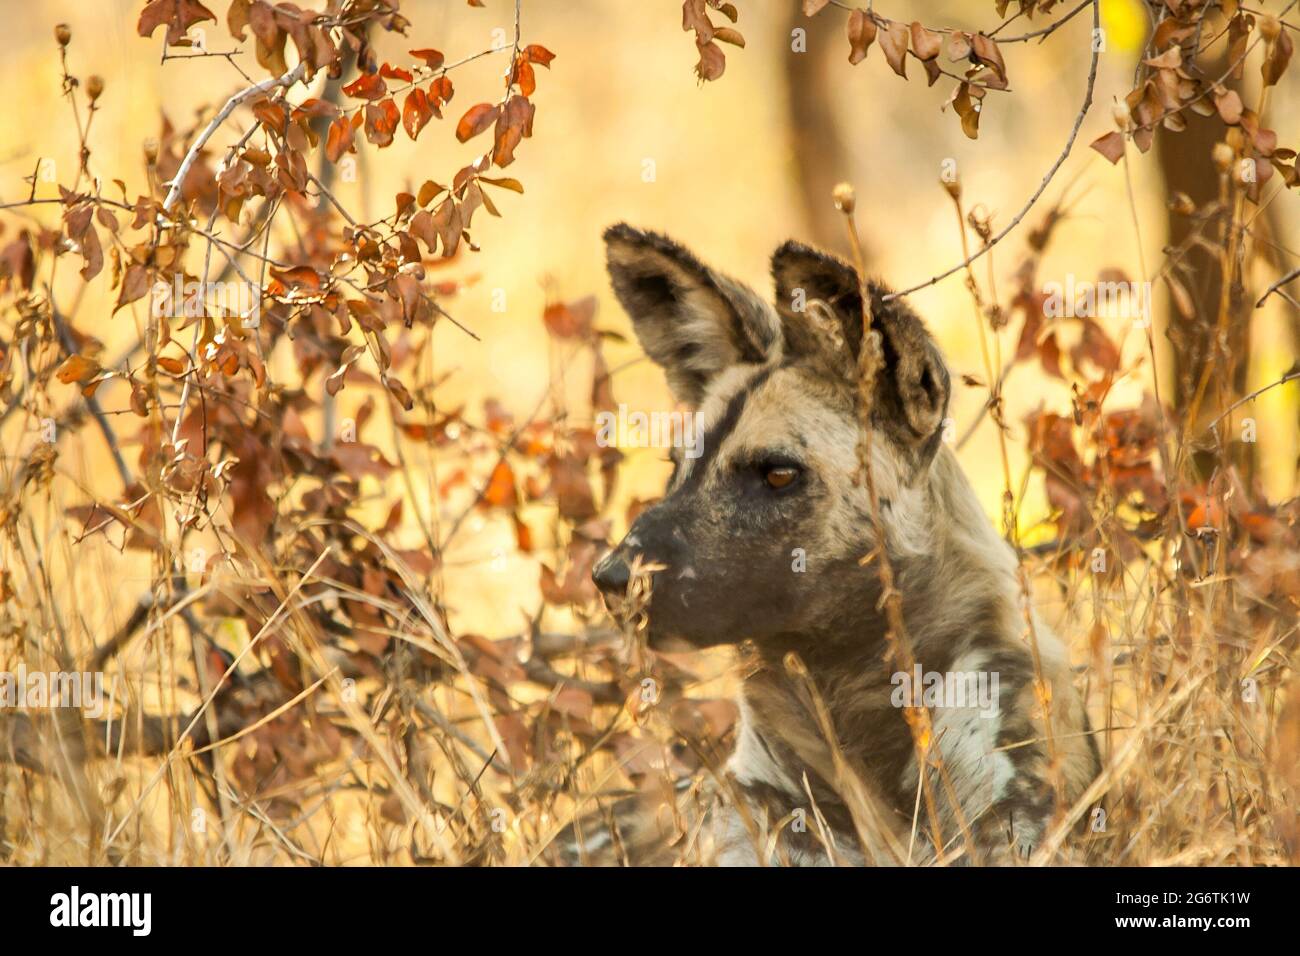 Ein afrikanischer Wildhund, der aufmerksam auf etwas auflistet, während er zwischen den herbstfarbenen Blättern des afrikanischen Bush geschützt liegt Stockfoto